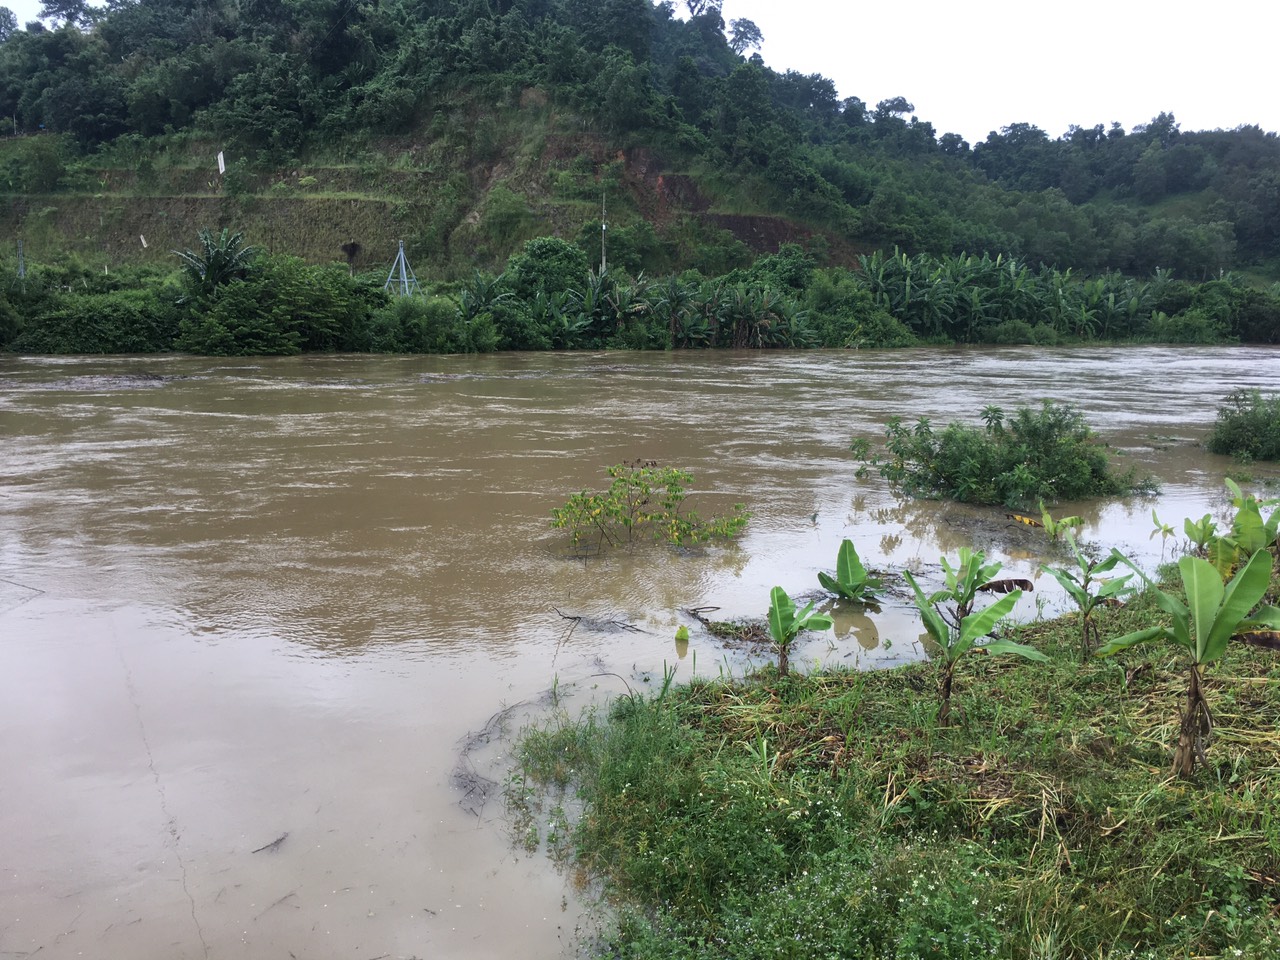 Bình Thuận: Mưa lớn gặp lúc hồ xả lũ hàng nghìn ha đất nông nghiệp bị ngập, thiệt hại hơn 15 tỷ đồng - Ảnh 2.